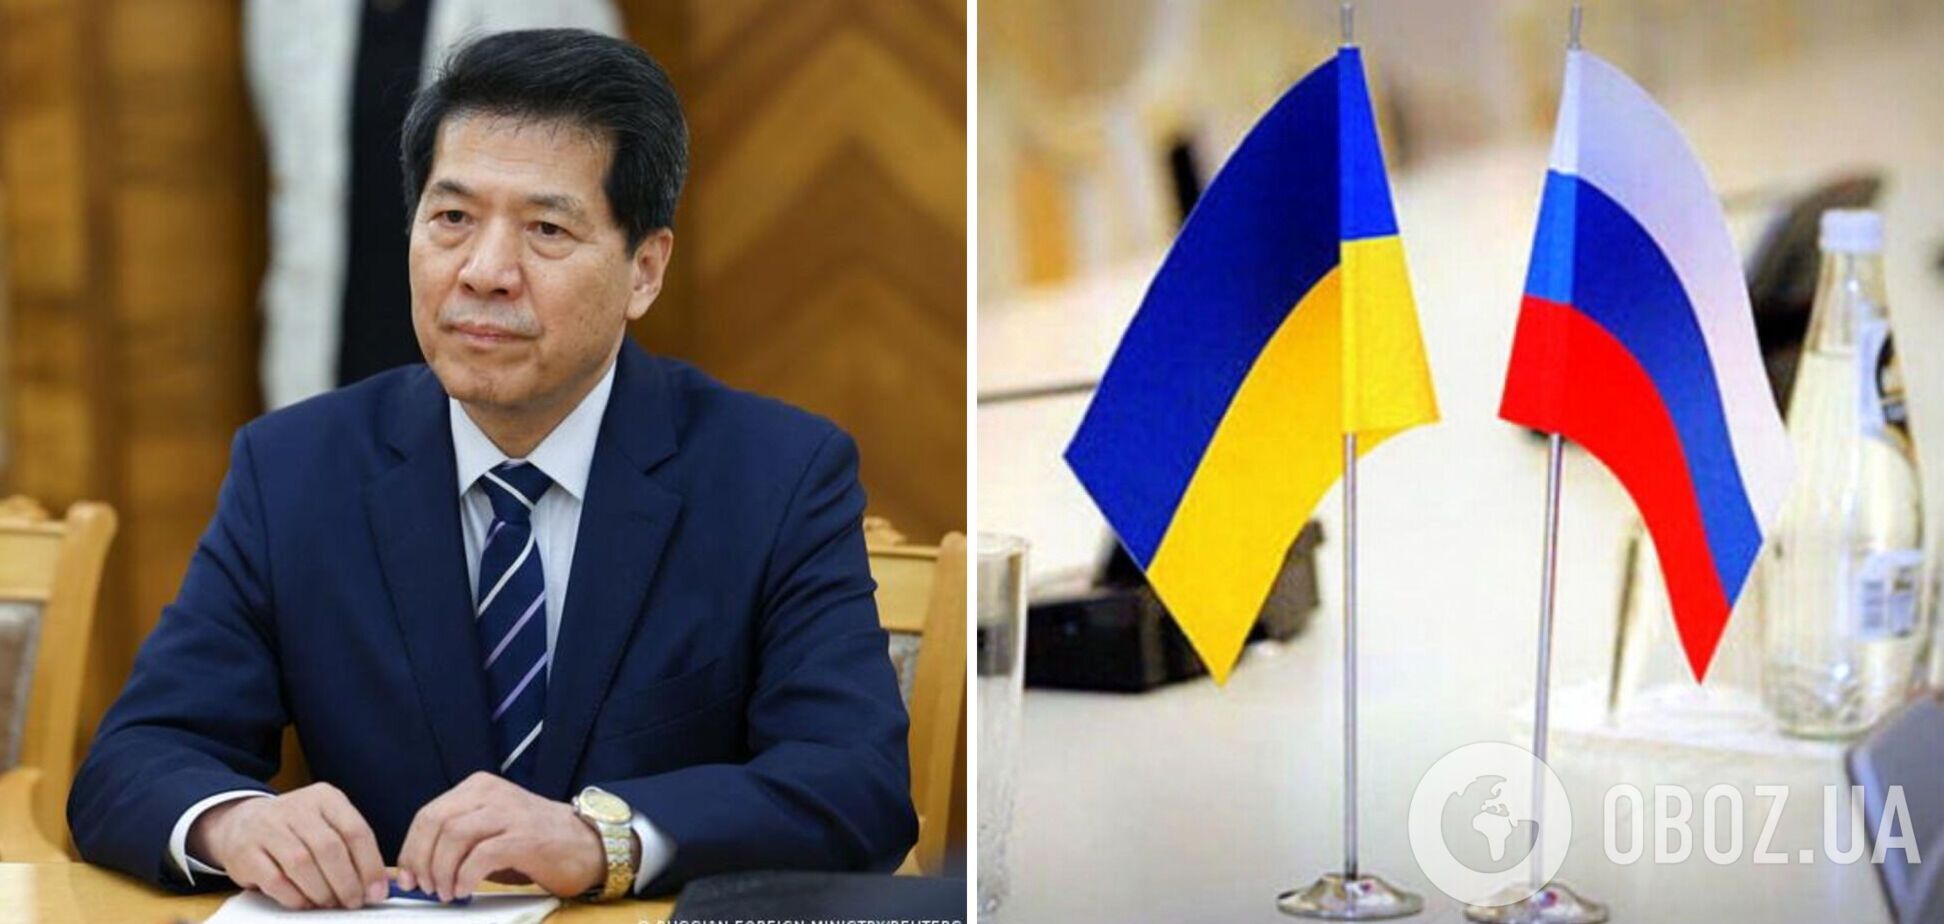 'Ни одна сторона не закрыла дверь': в Китае сделали новое заявление о мирных переговорах Украины с РФ